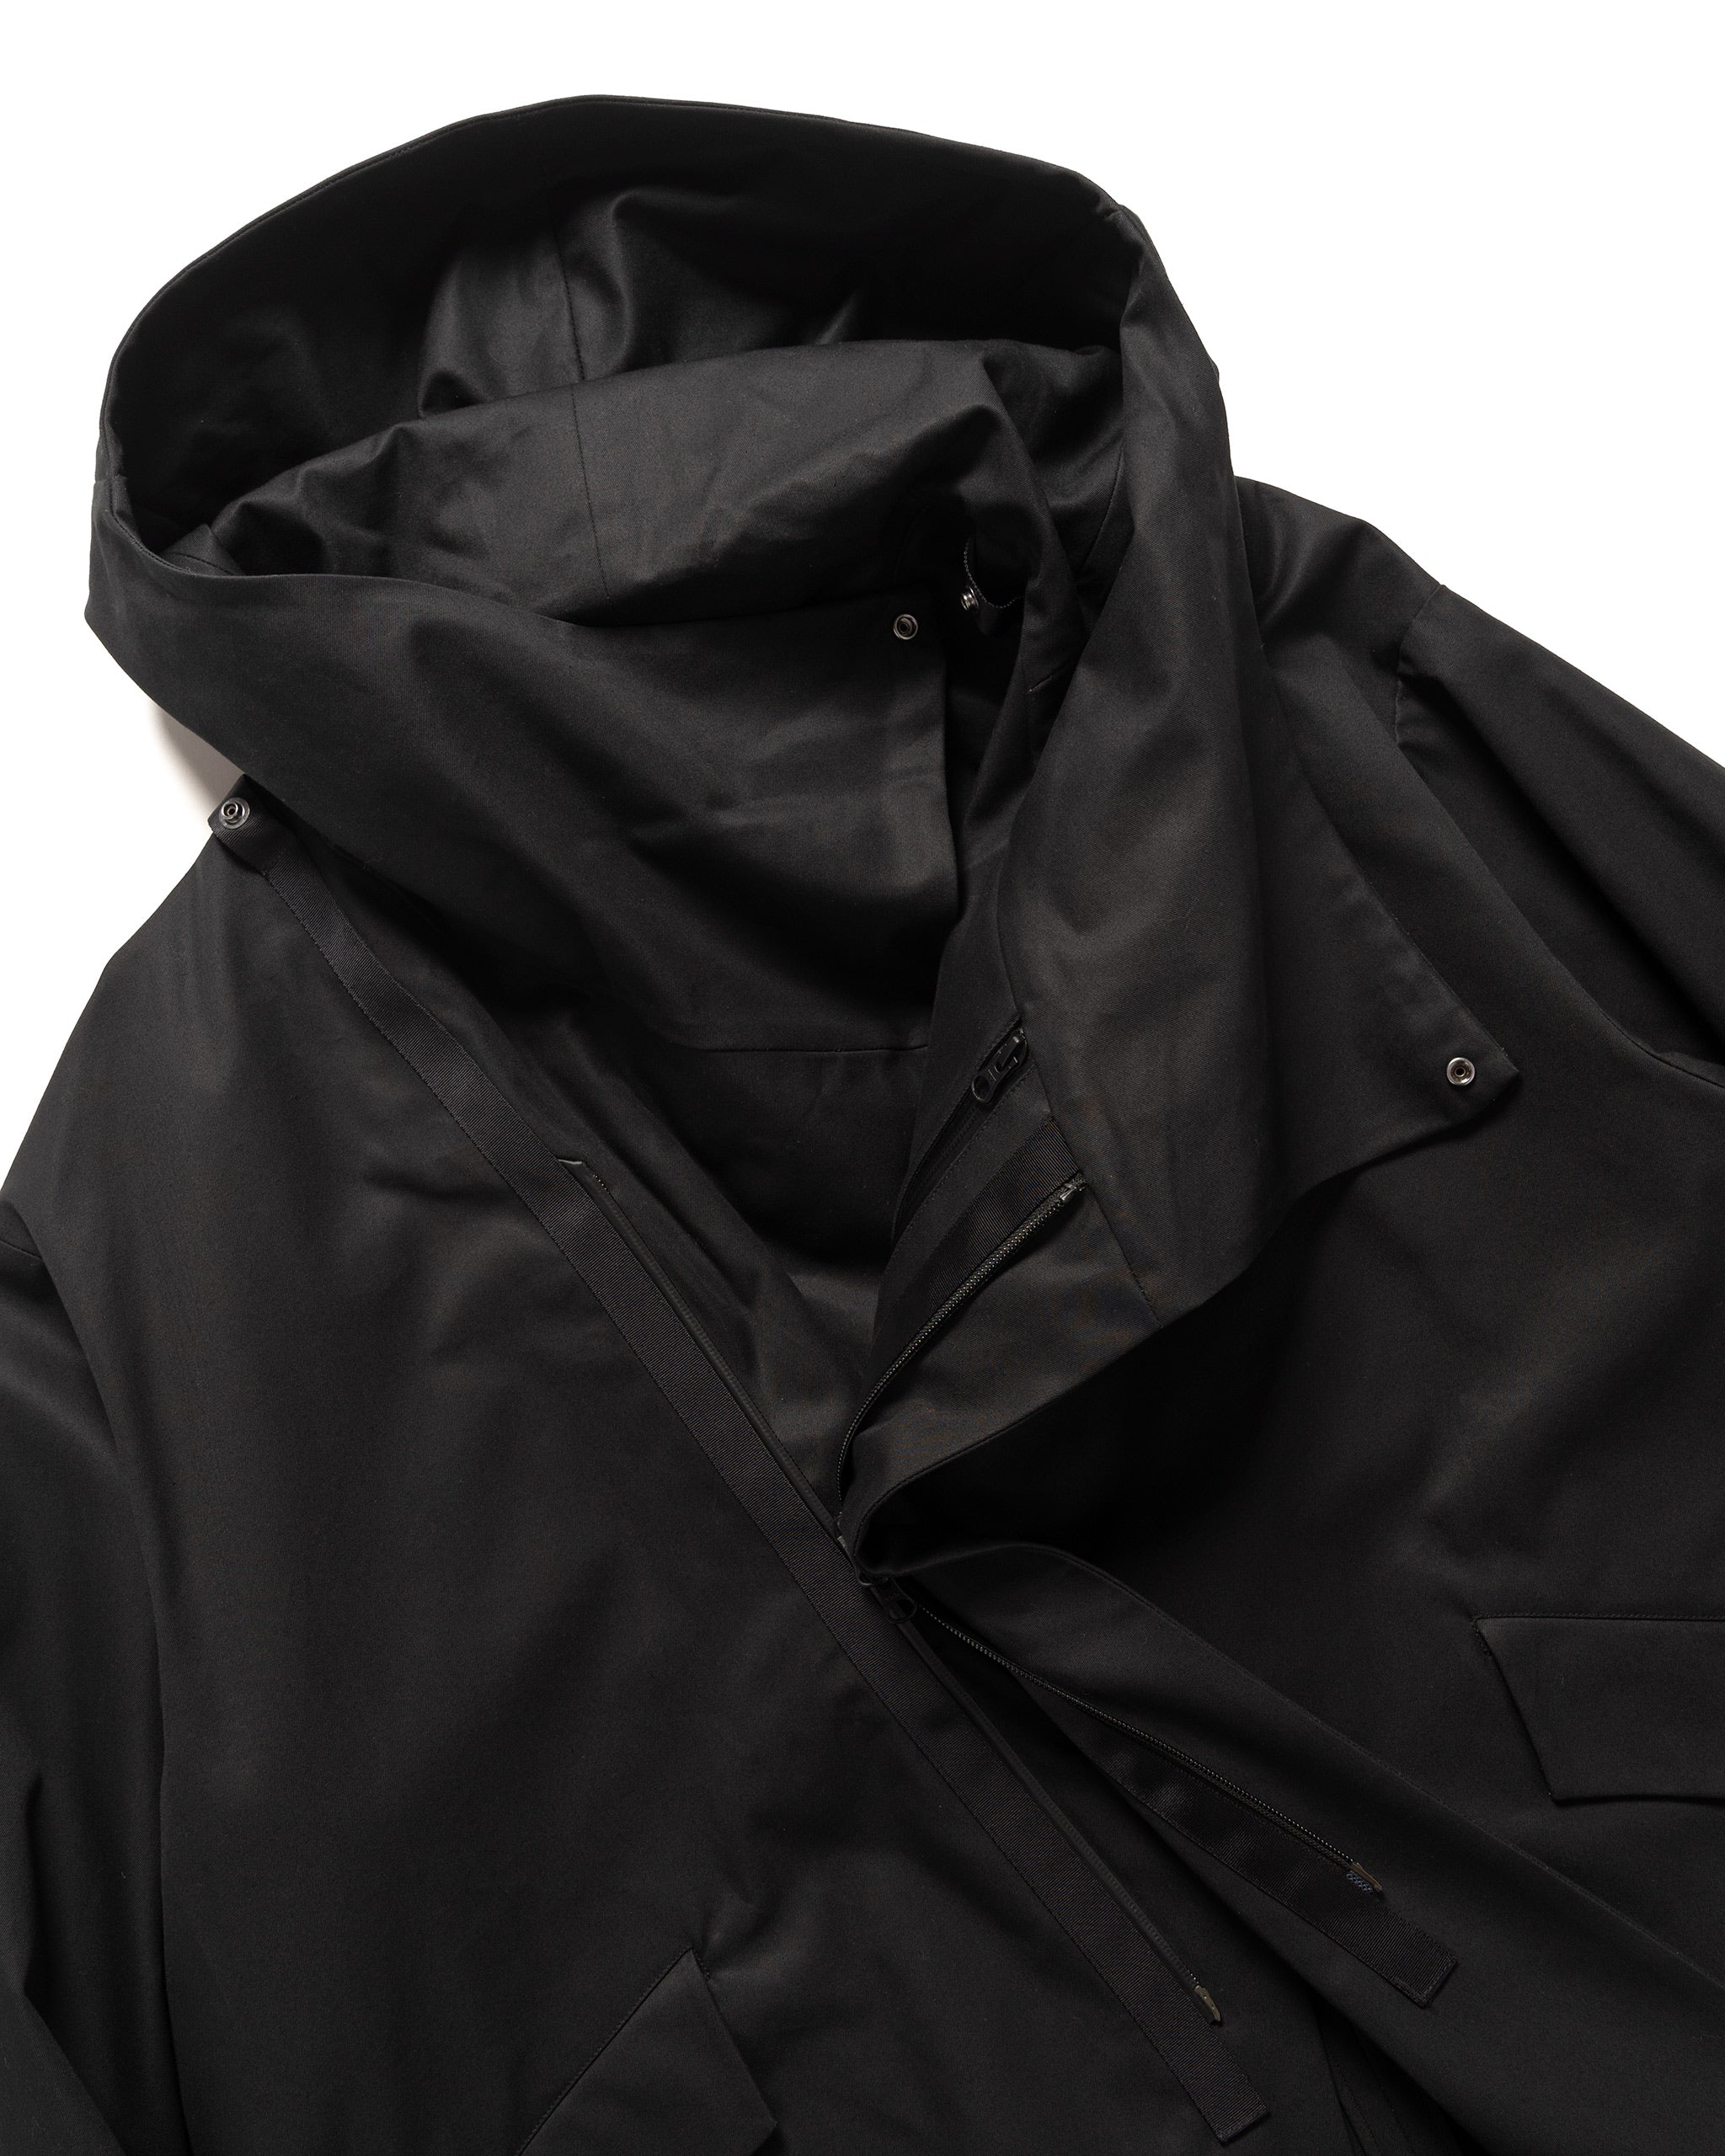 JK-TB110 Ventile Coat Black